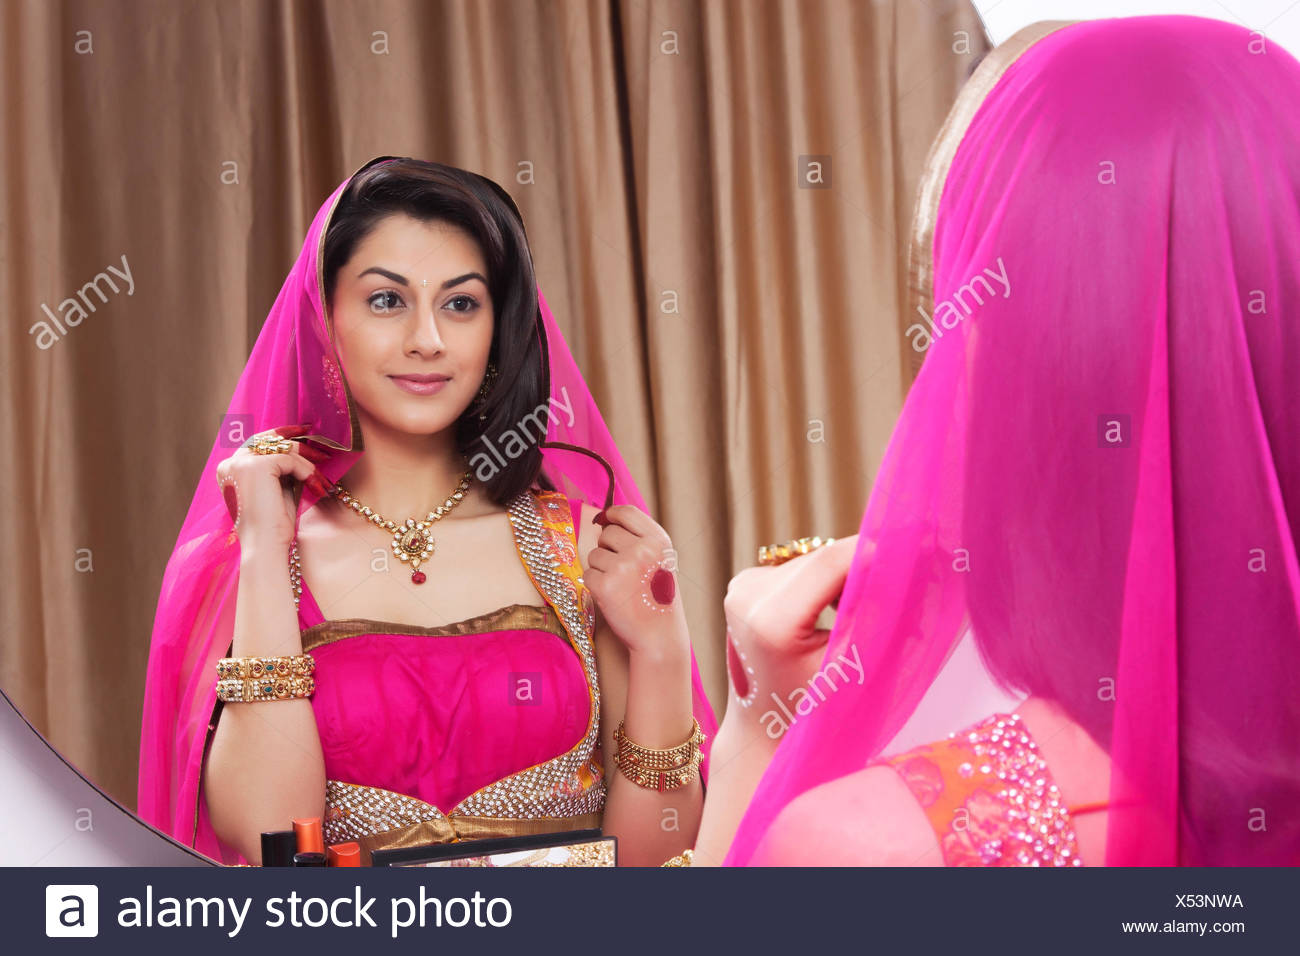 Beautiful woman admiring herself in the mirror Stock Photo ...